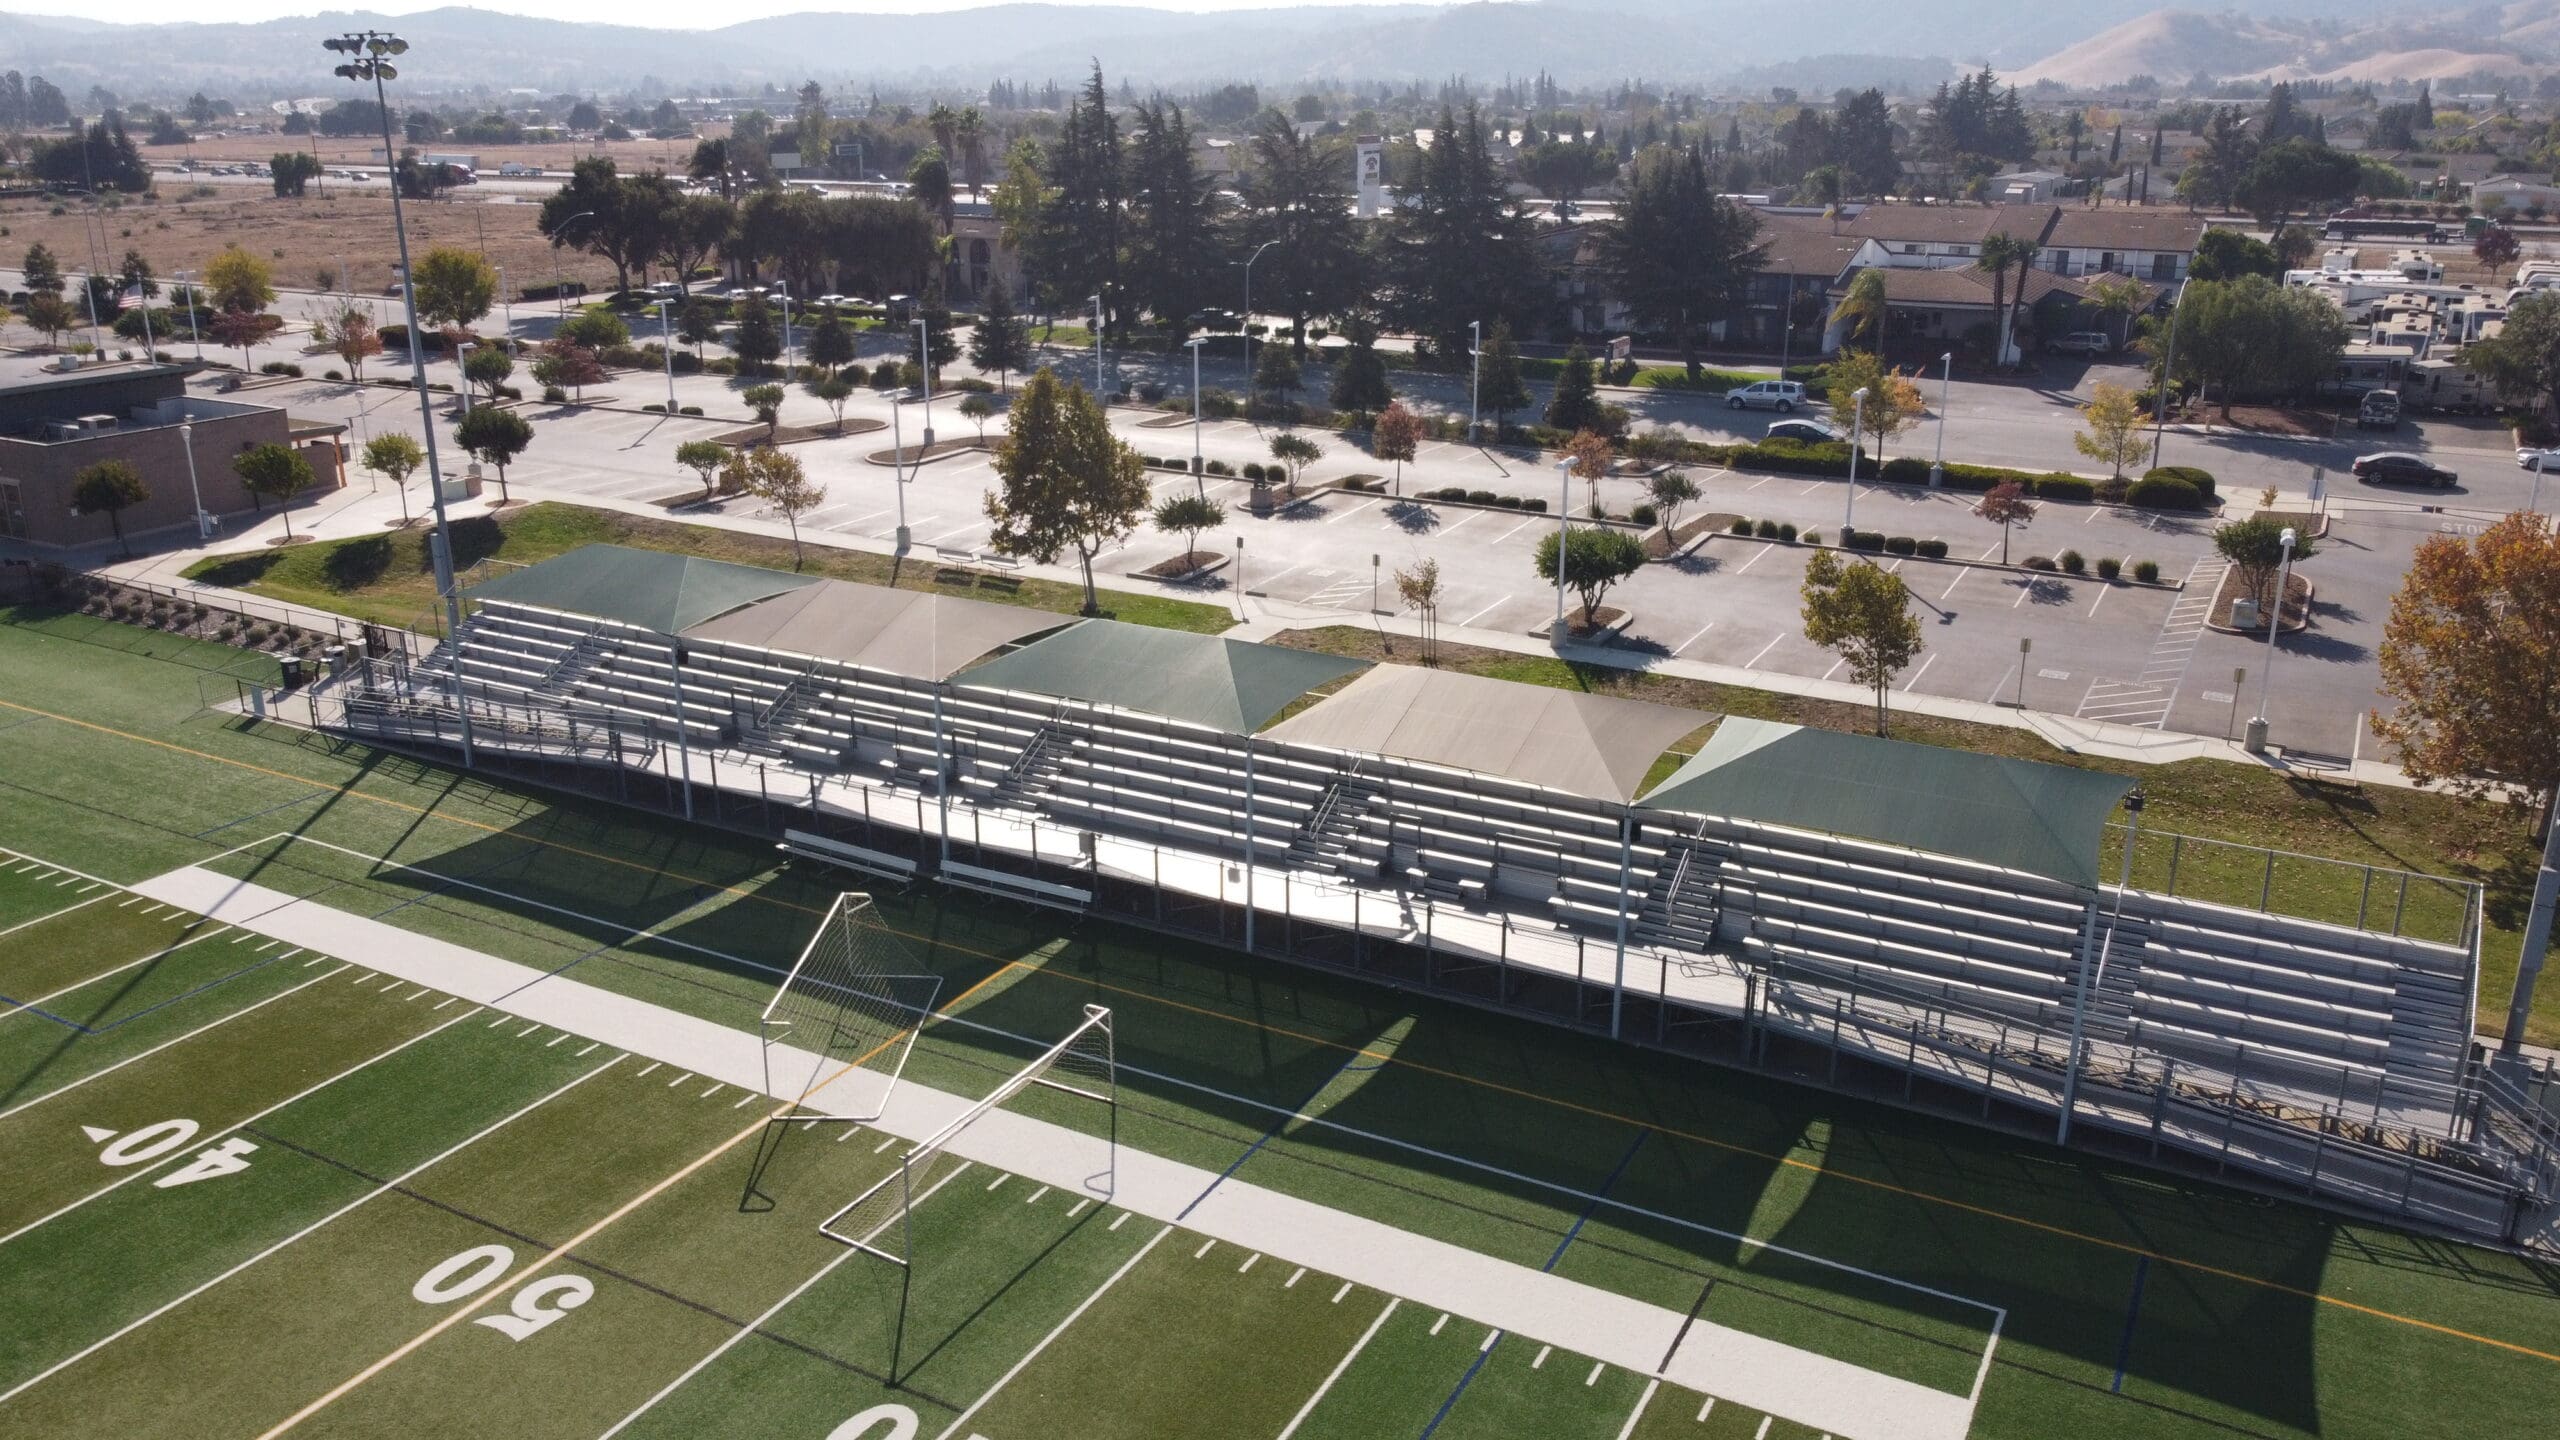 USA SHADE fabric shade structure at a football stadium